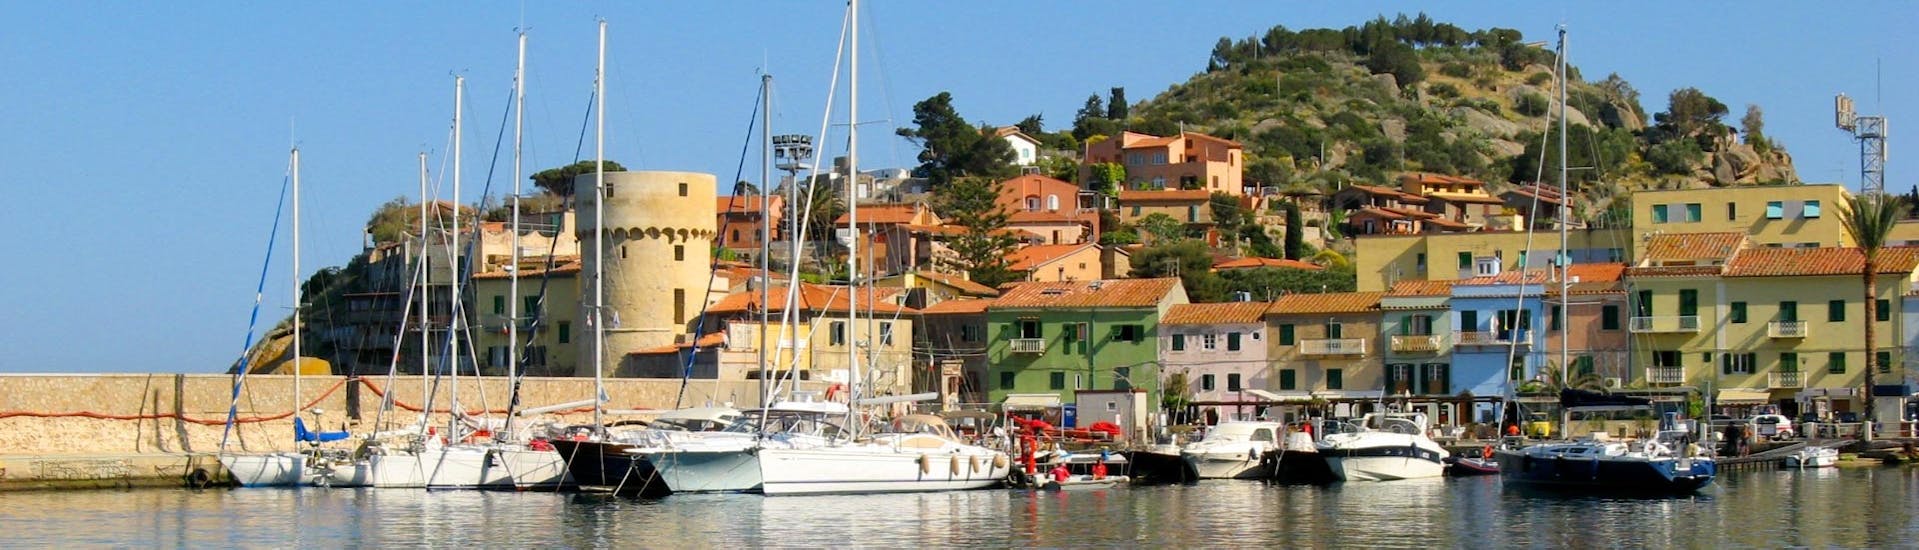 Vue de la ville près du port lors de la balade en bateau d'une journée sur l'île de Giglio avec Toscana Mini Crociere.